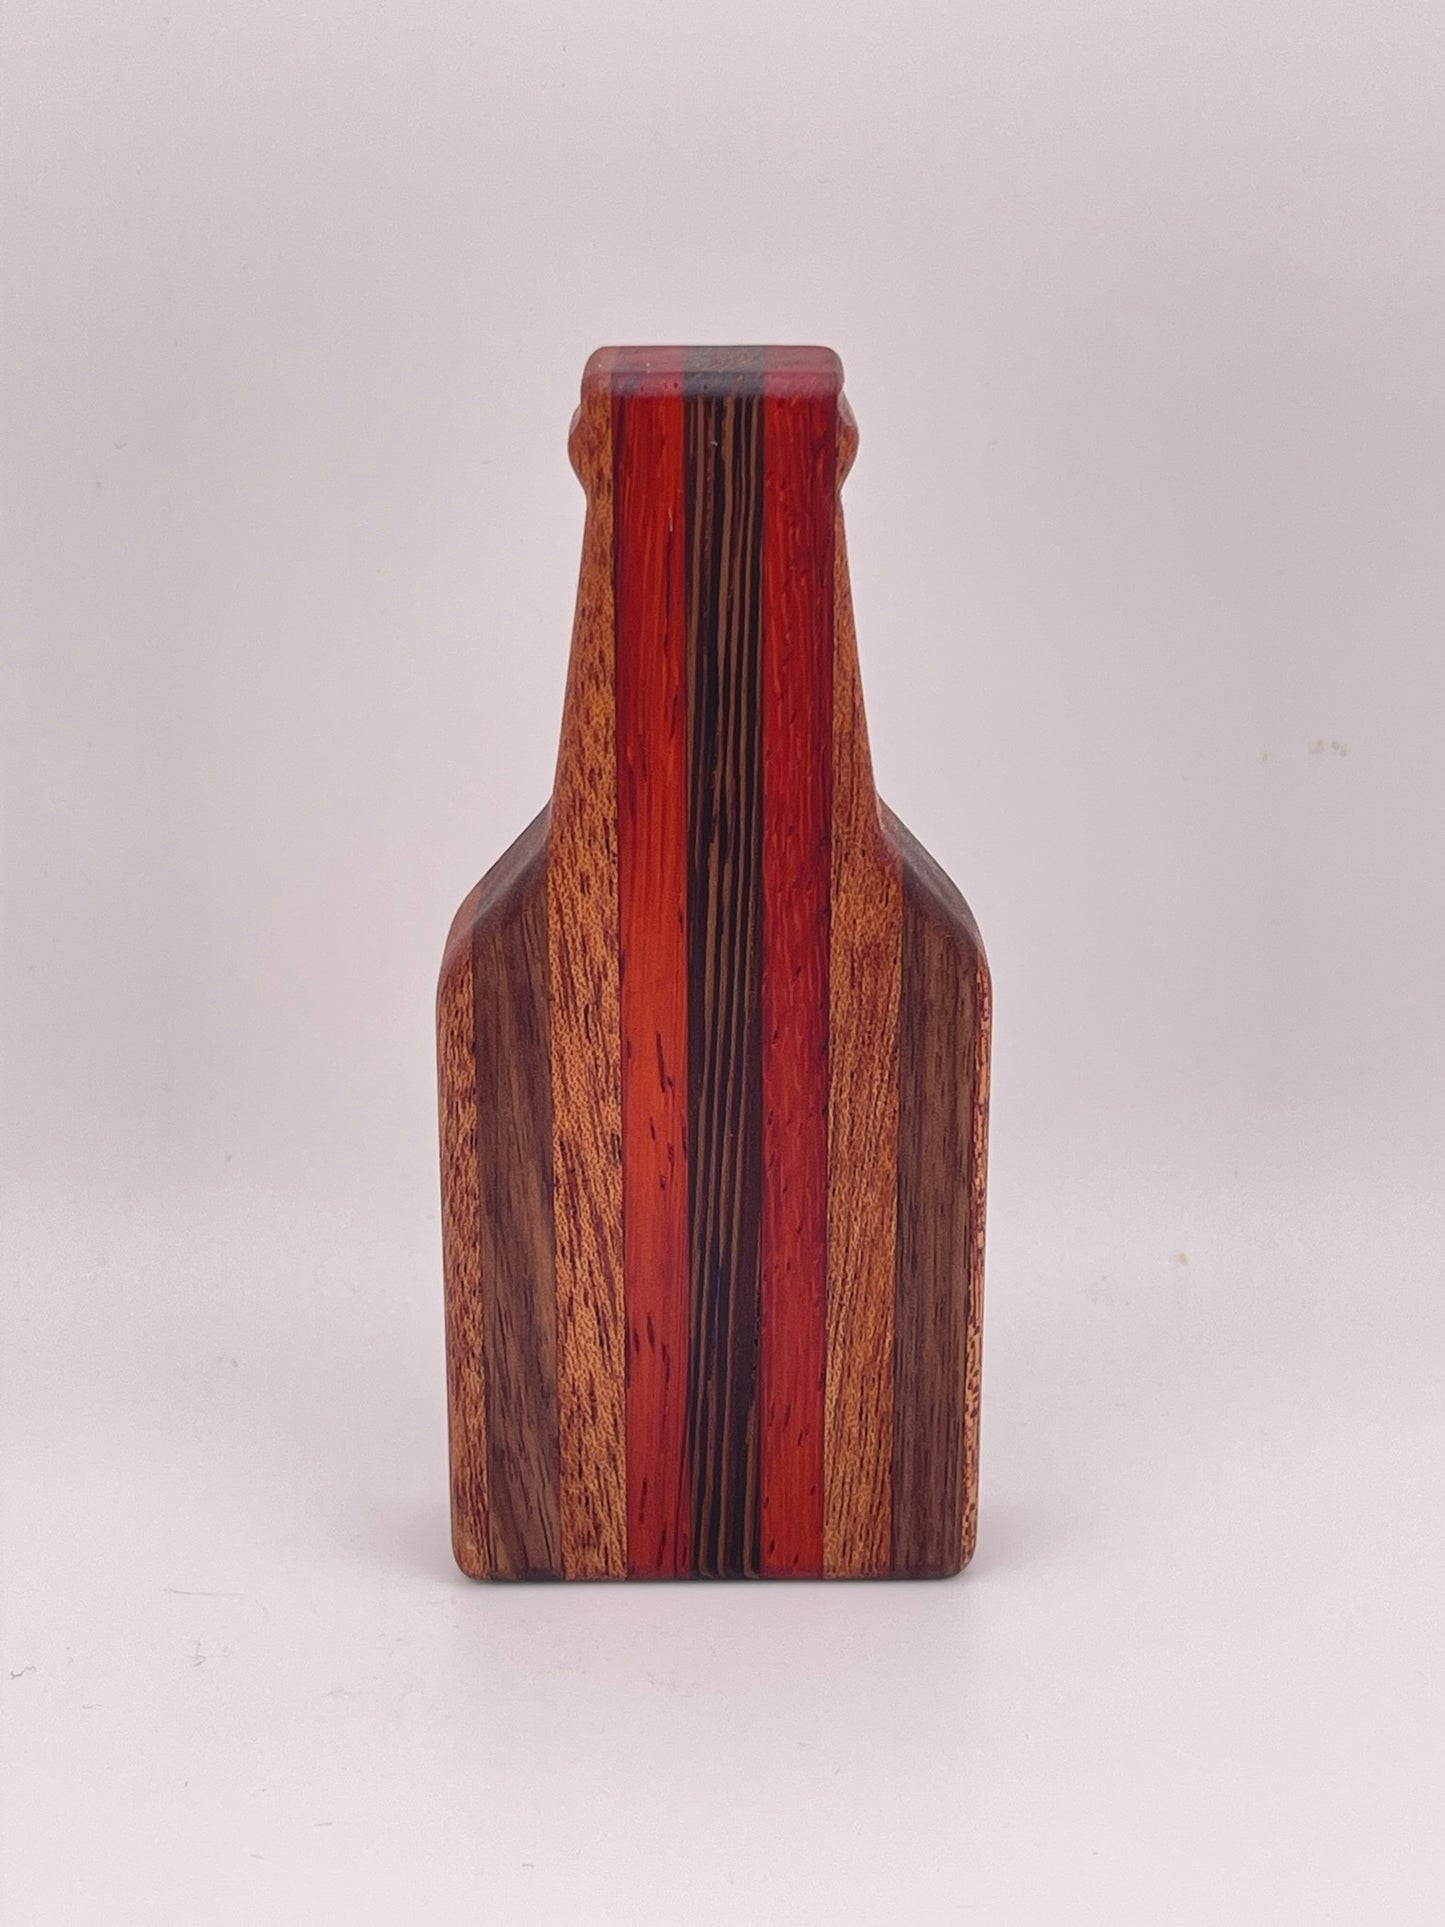 Wood Bottle Opener- Magnetic - Walnut, Maple, Oak, Exotic